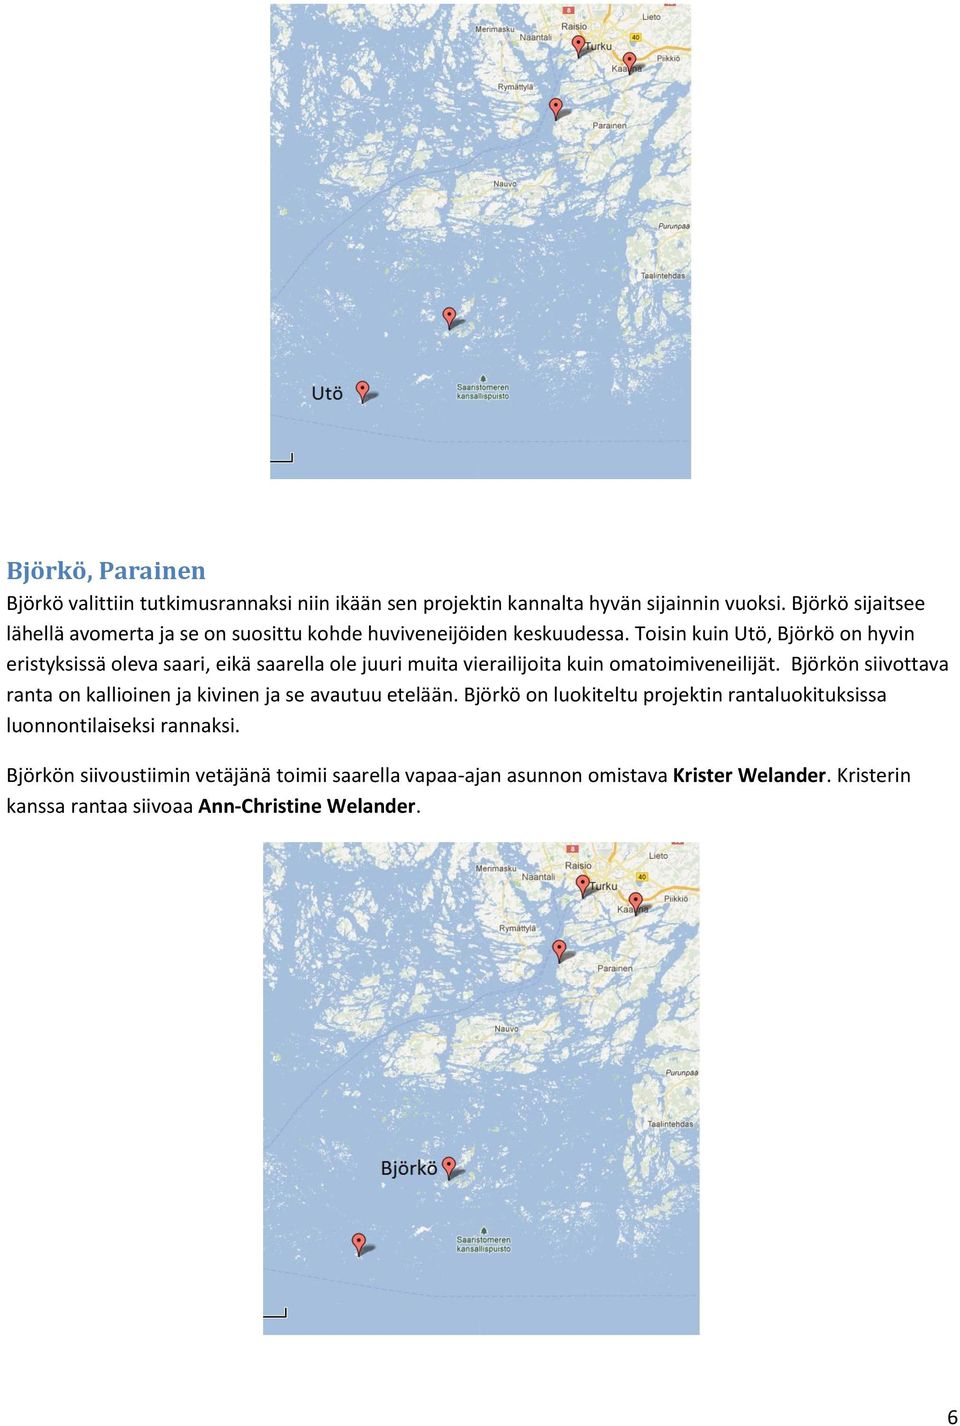 Toisin kuin Utö, Björkö on hyvin eristyksissä oleva saari, eikä saarella ole juuri muita vierailijoita kuin omatoimiveneilijät.